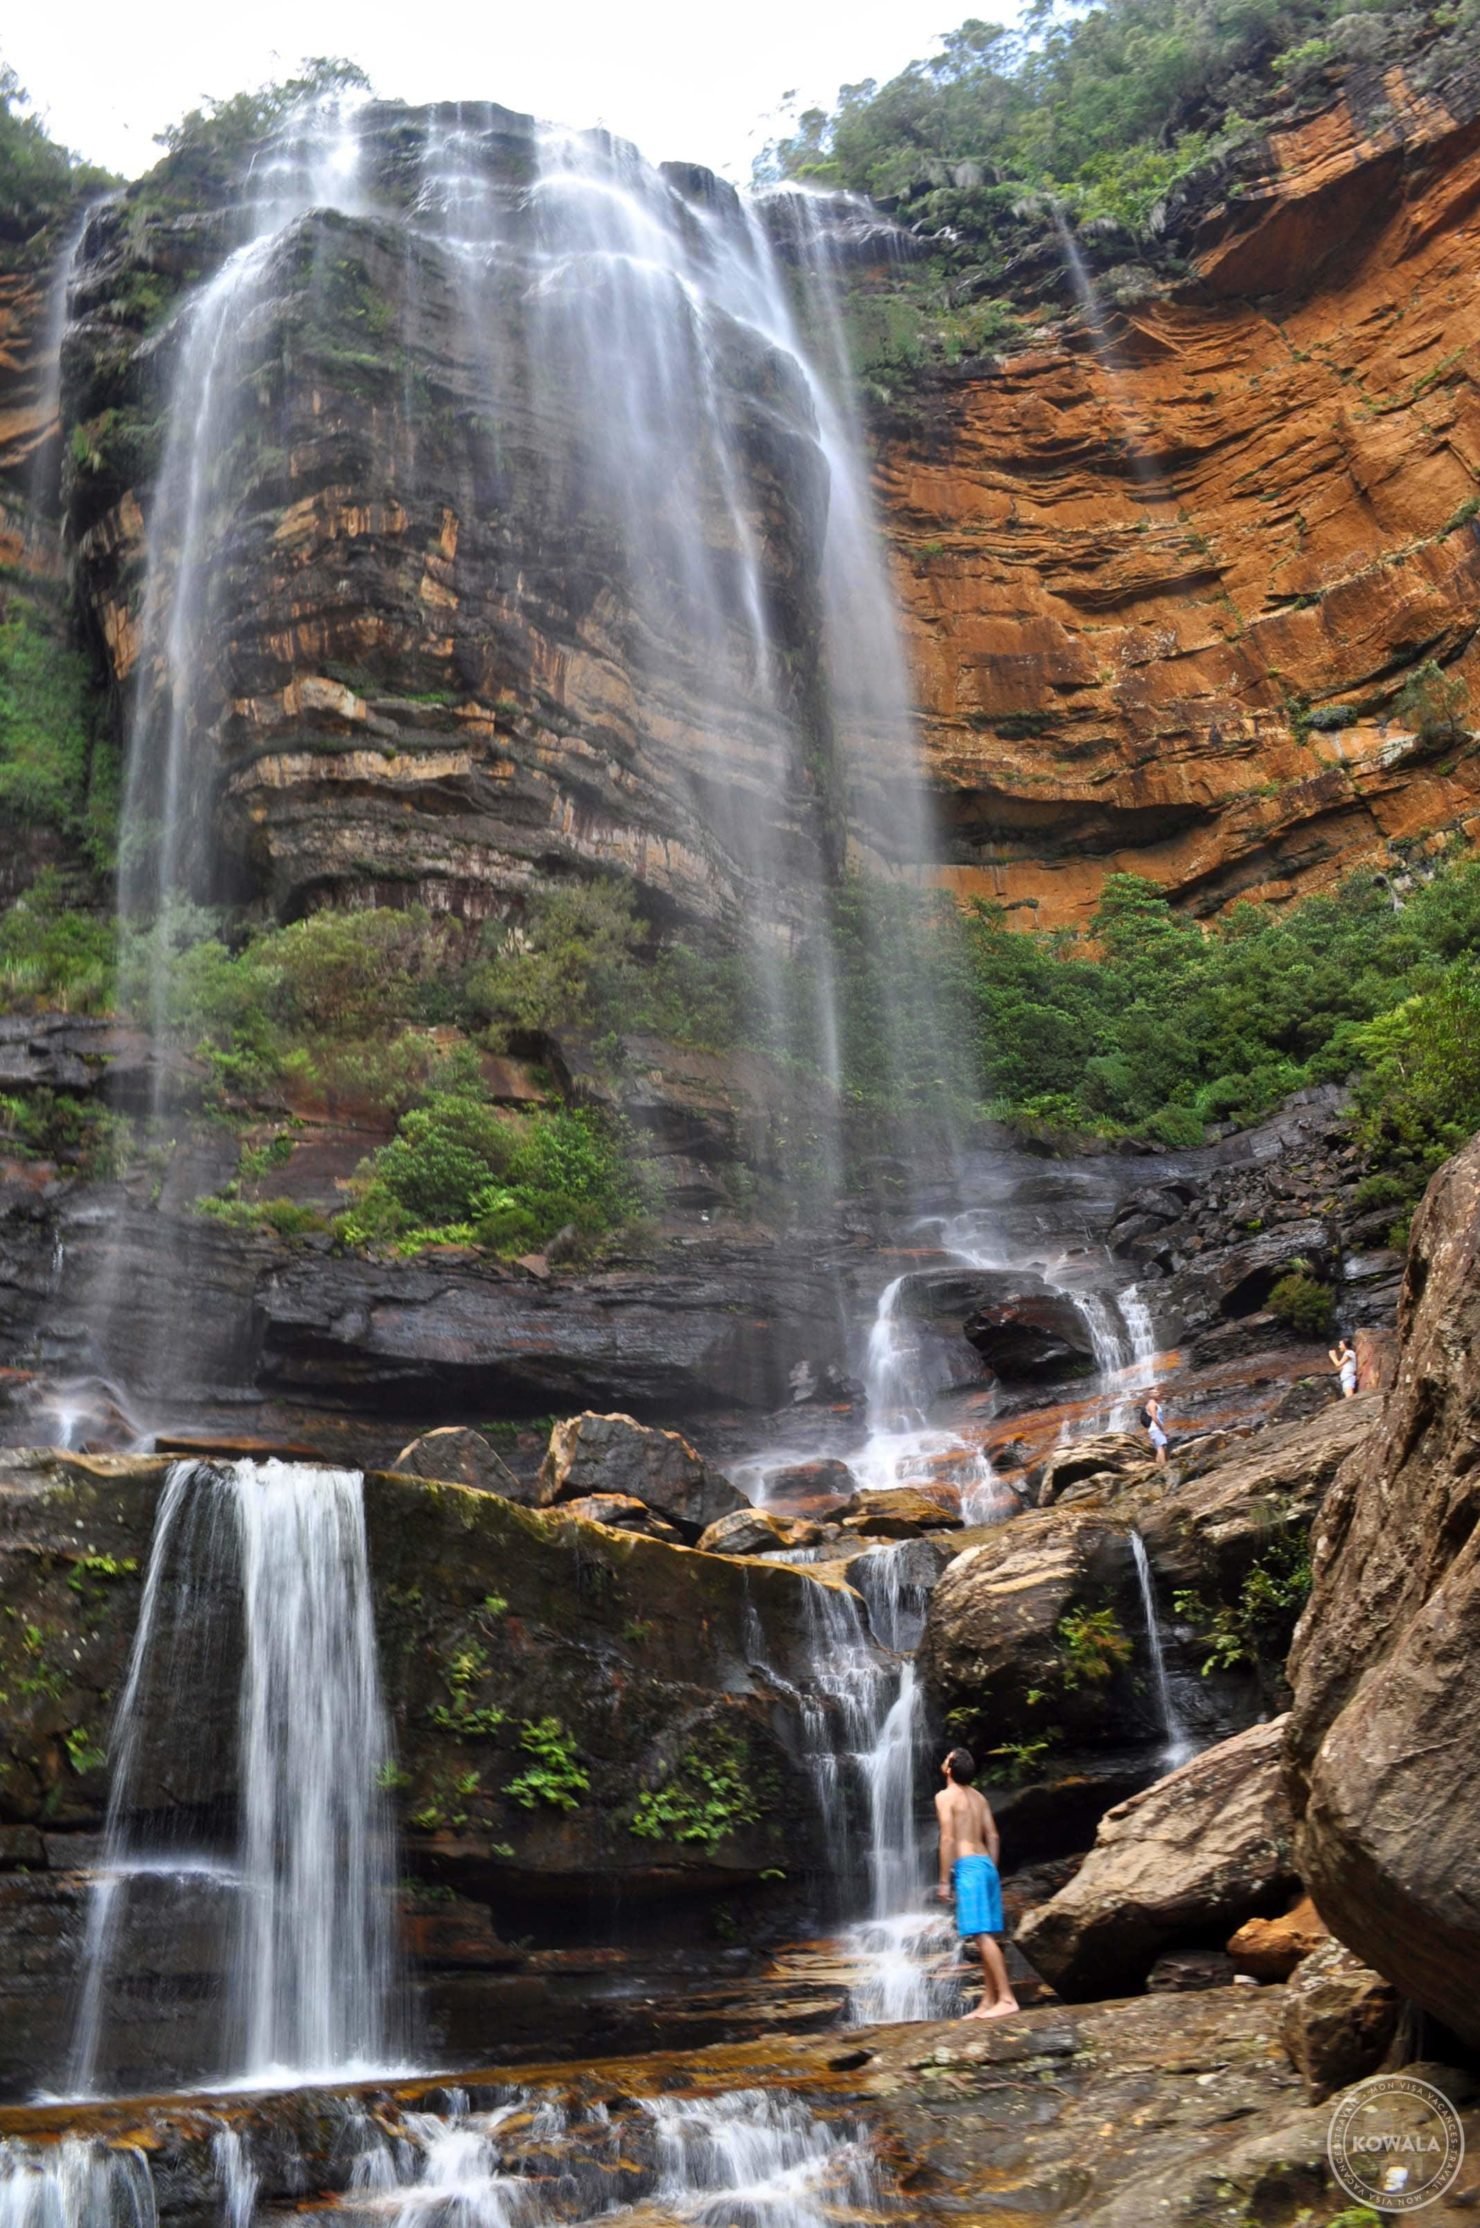 Antonin sous les cascades Wentworth des Blue mountains en Australie